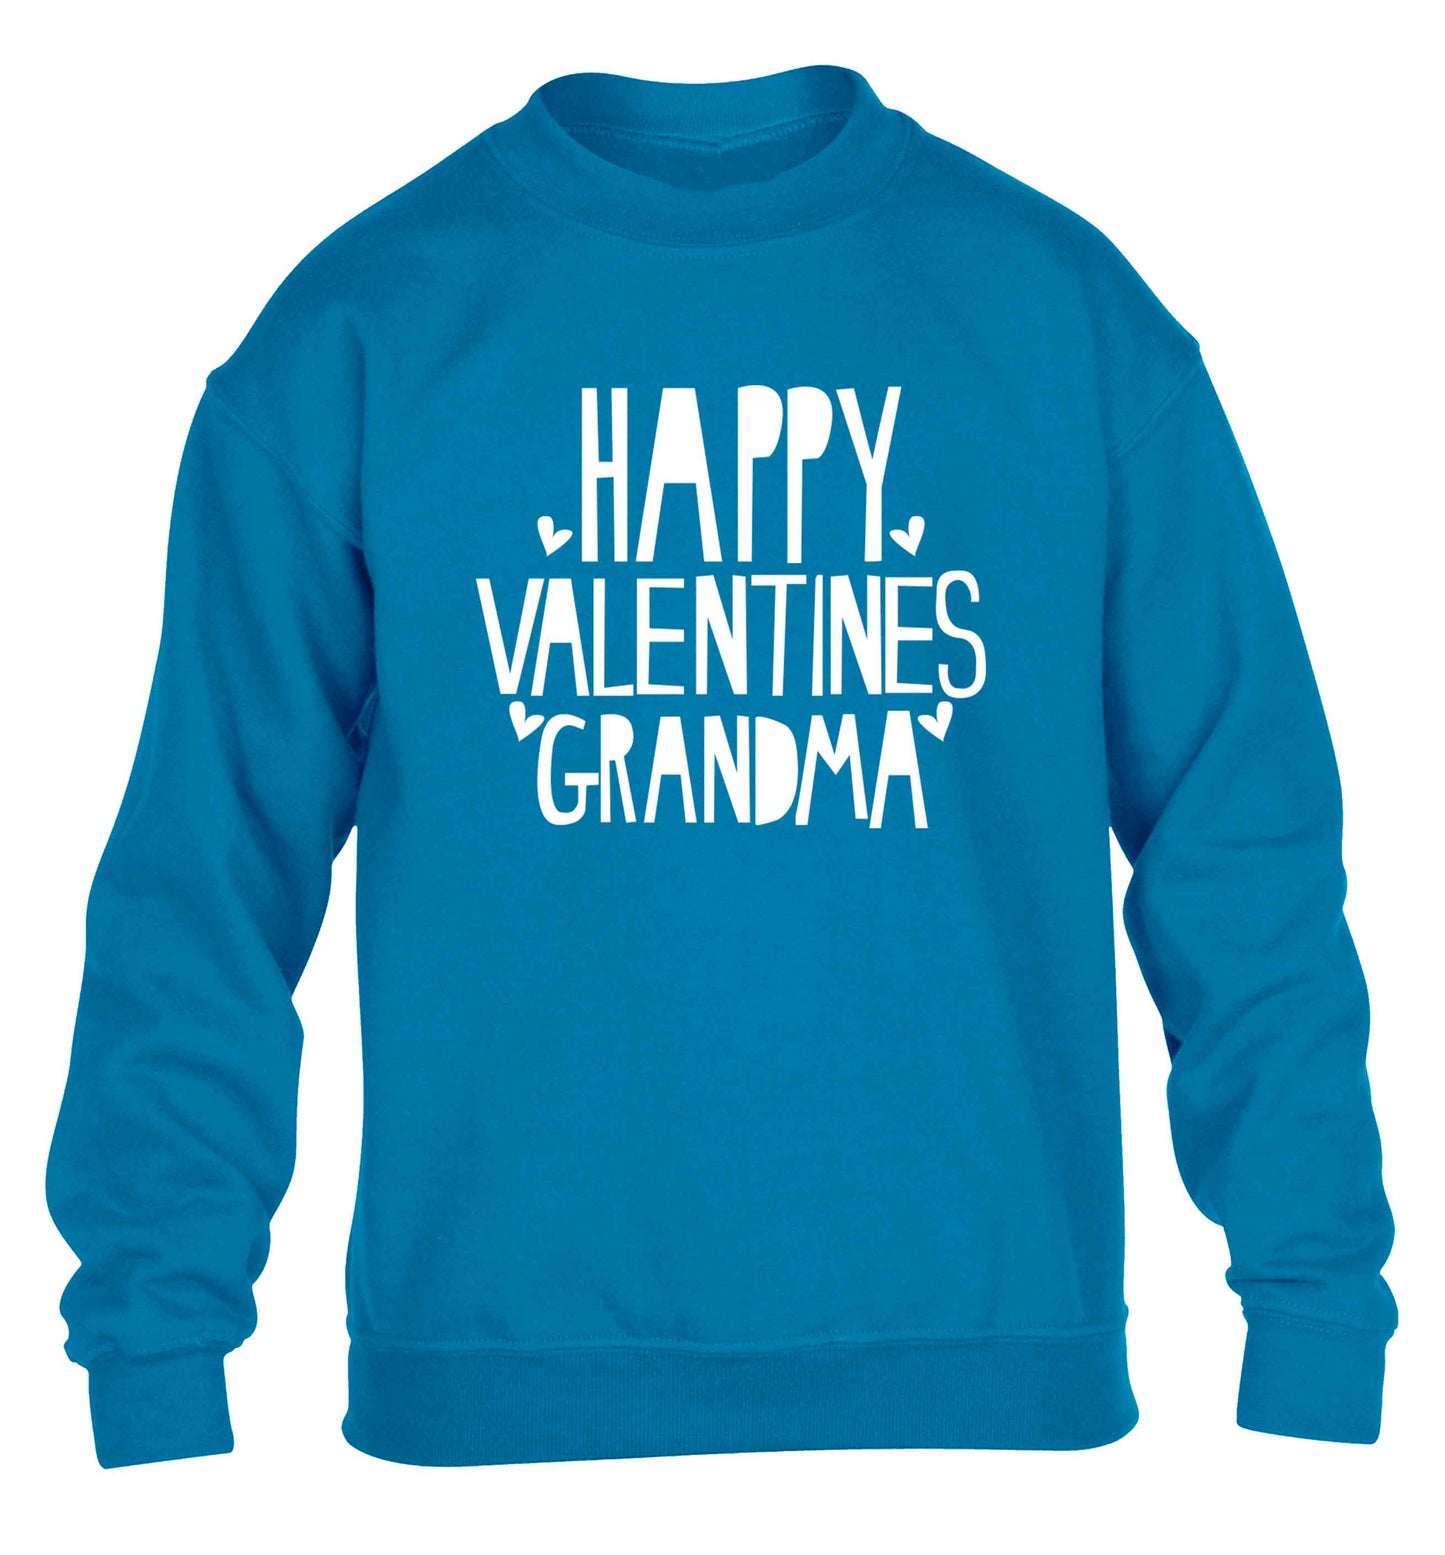 Happy valentines grandma children's blue sweater 12-13 Years